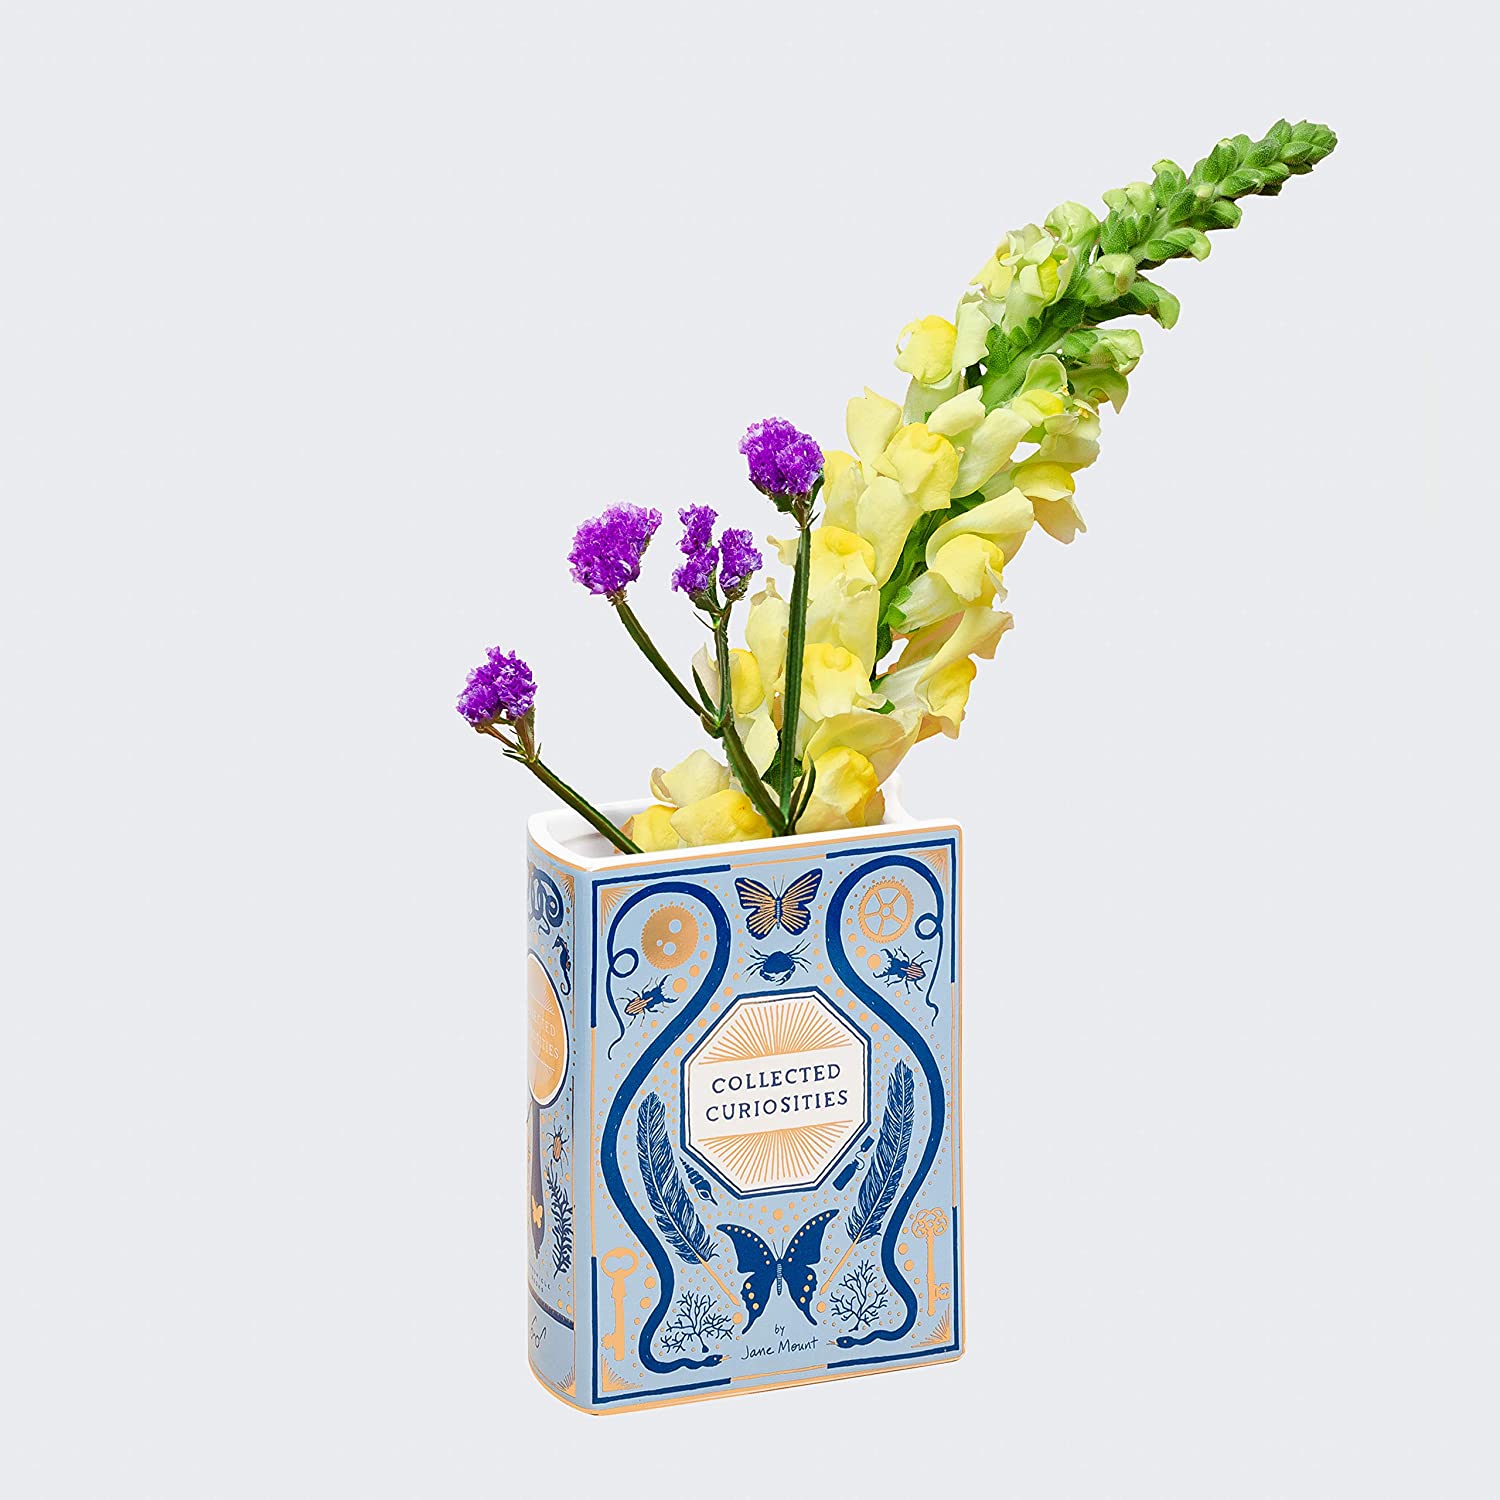 Book-shaped ceramic vase